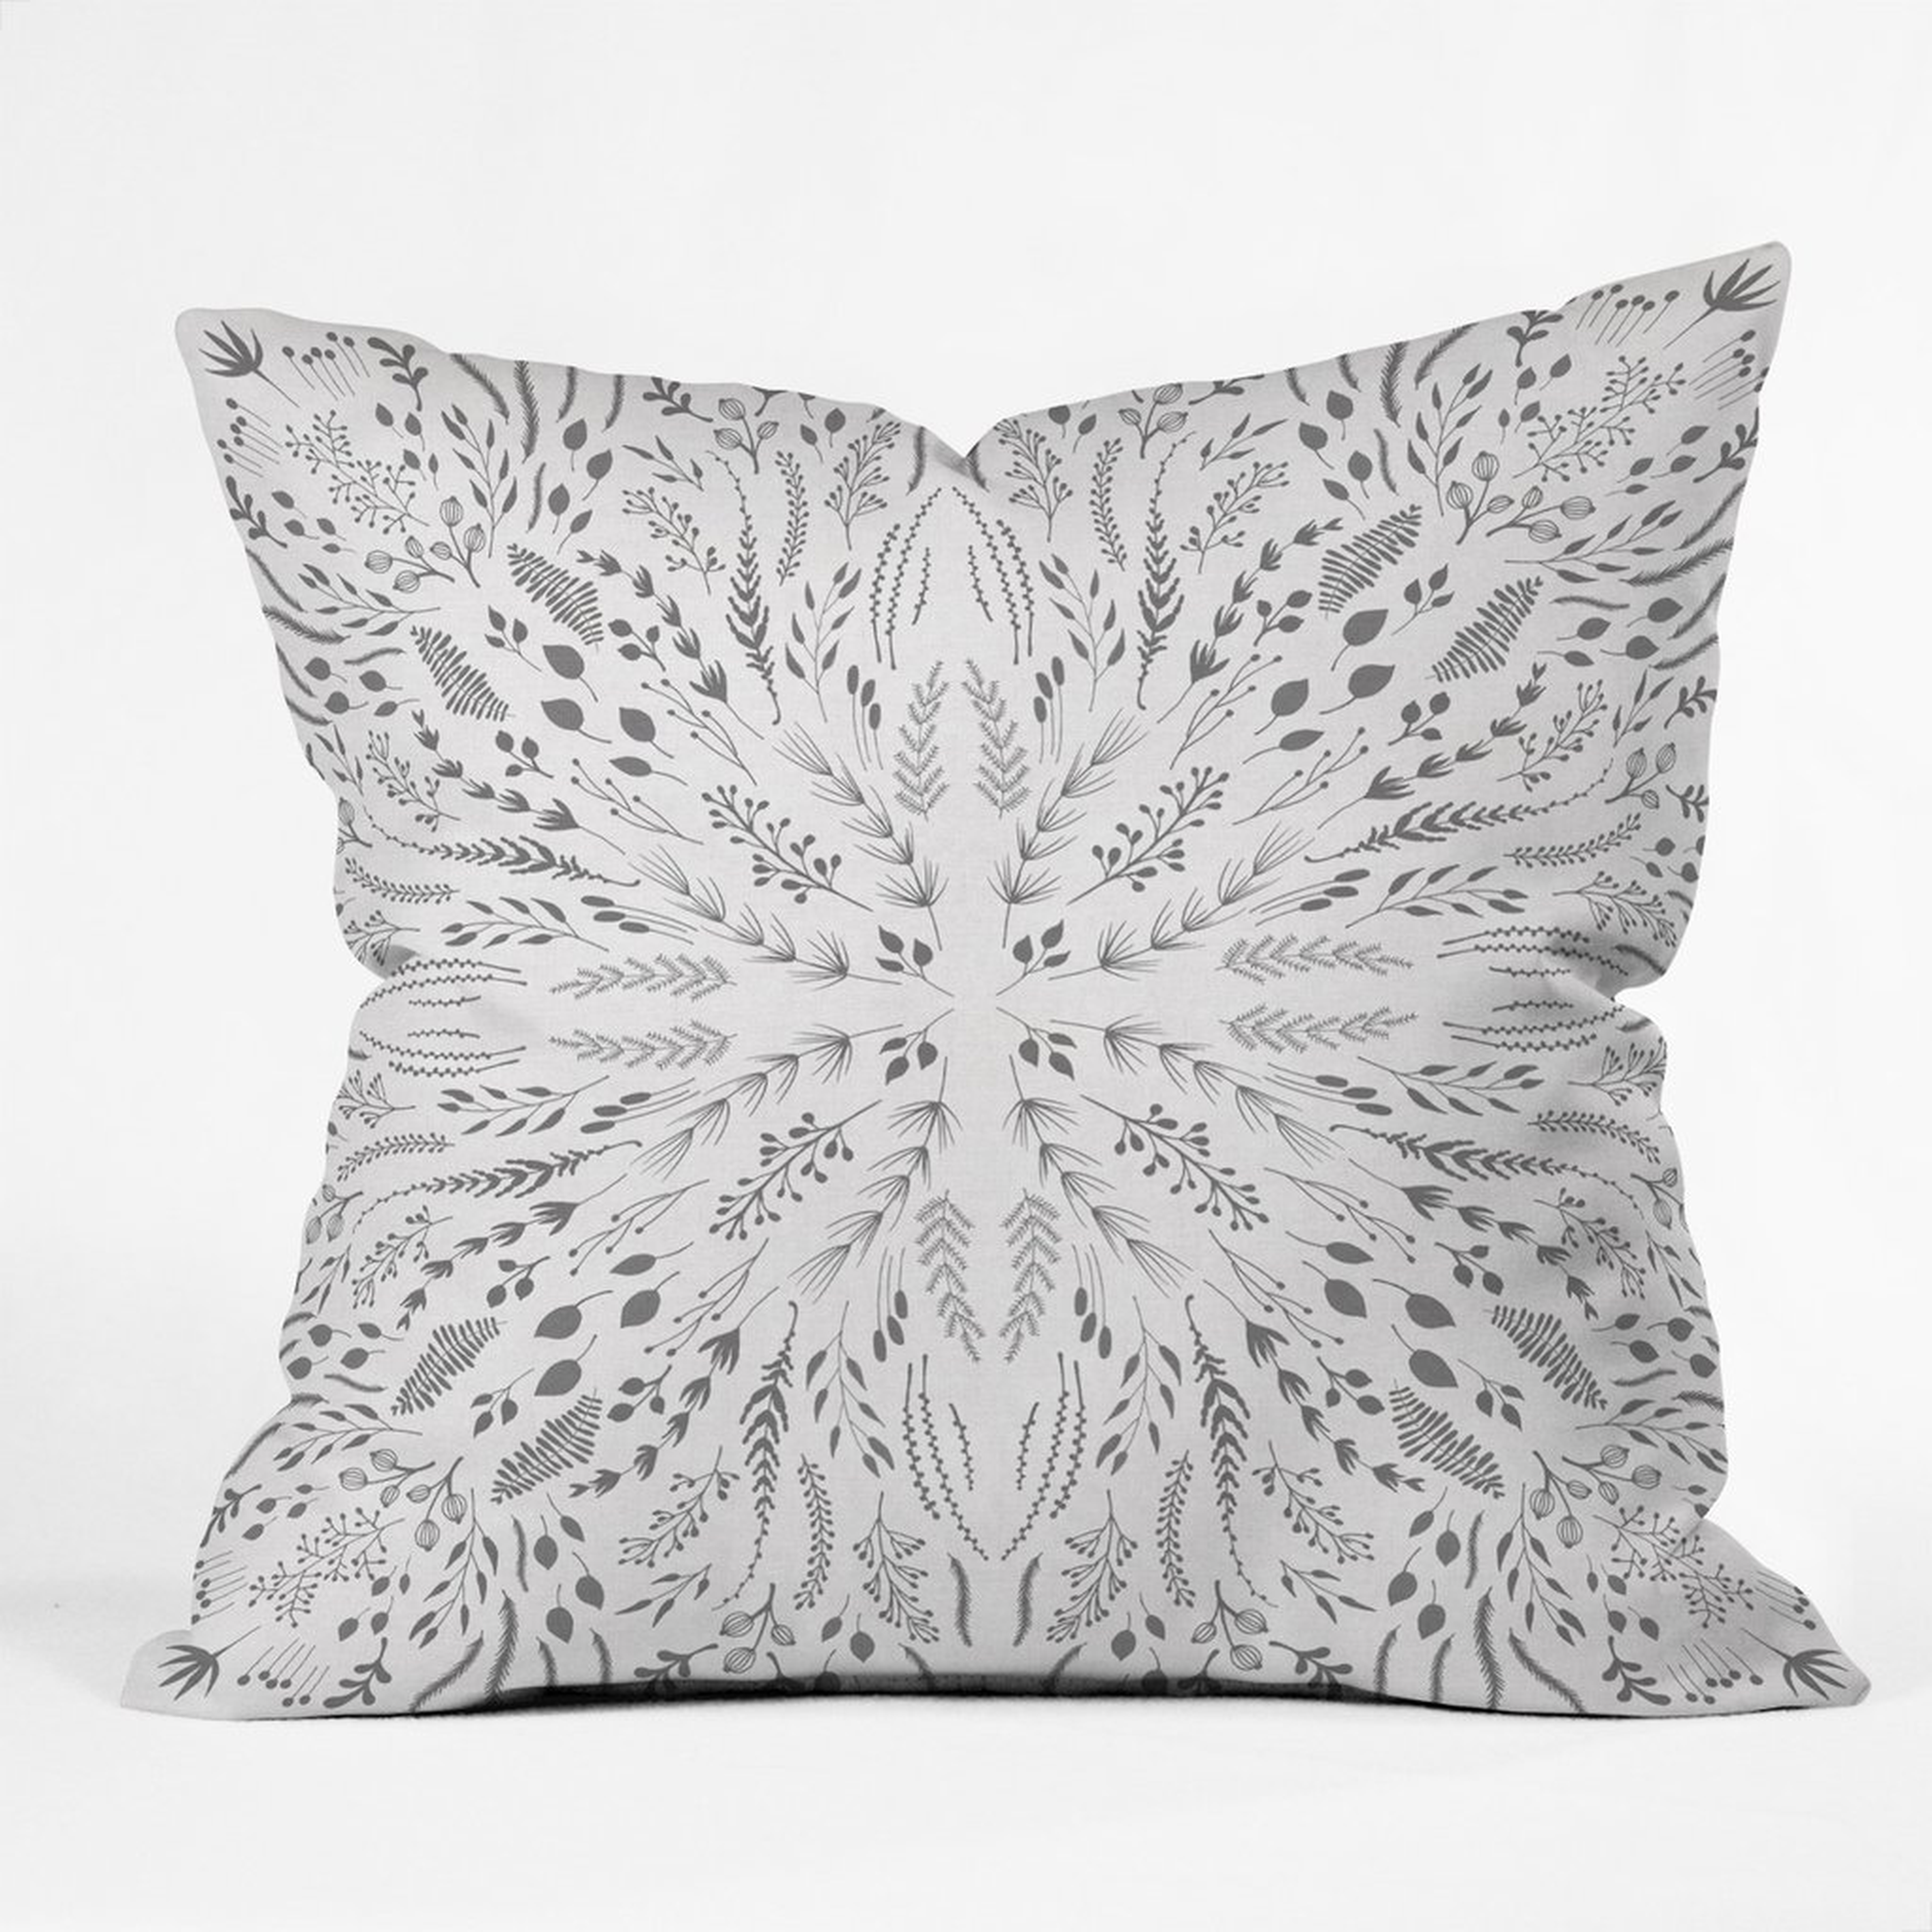 GRAY MAZE Throw Pillow - 18" x 18" - Polyester Insert - Wander Print Co.